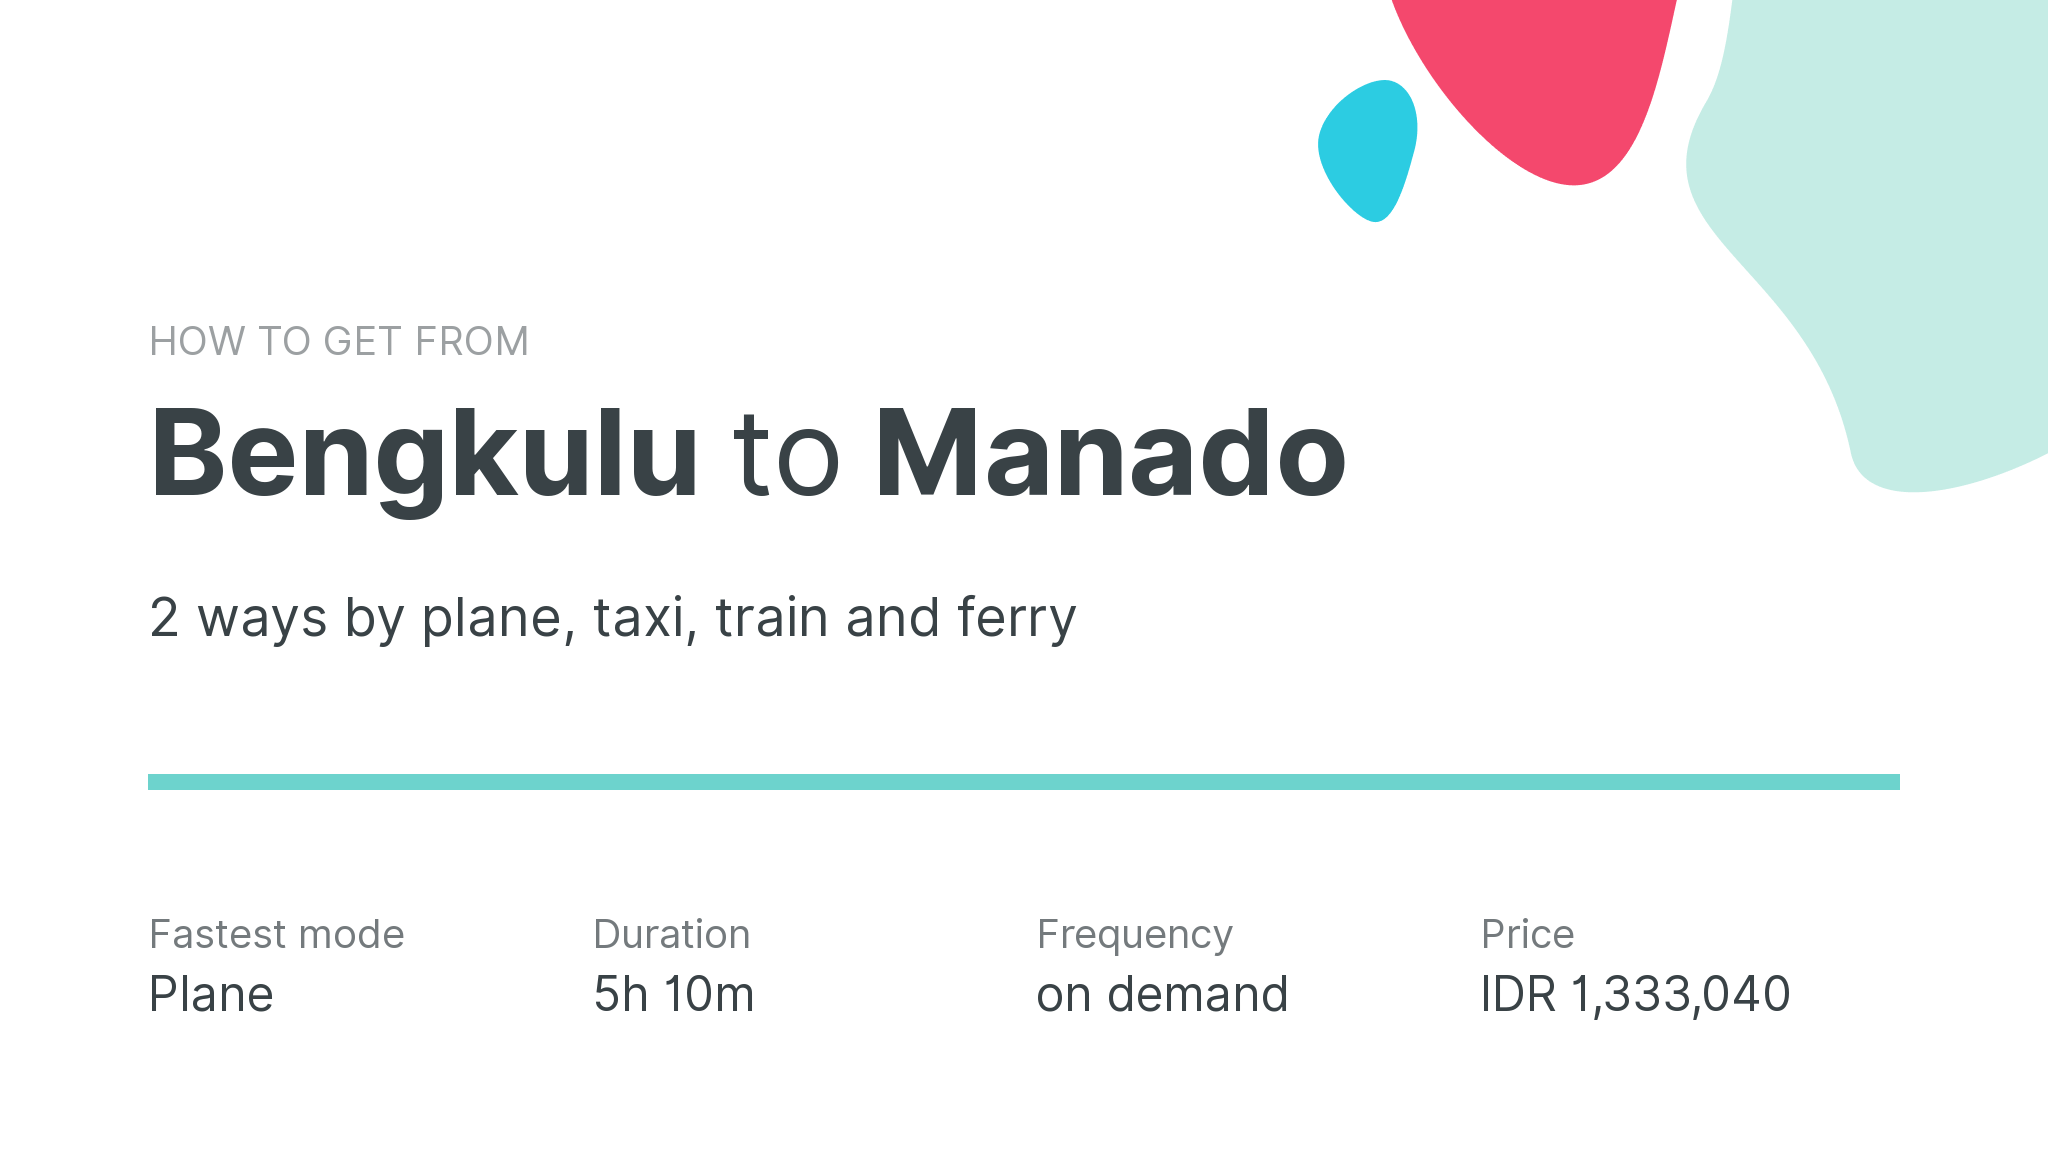 How do I get from Bengkulu to Manado